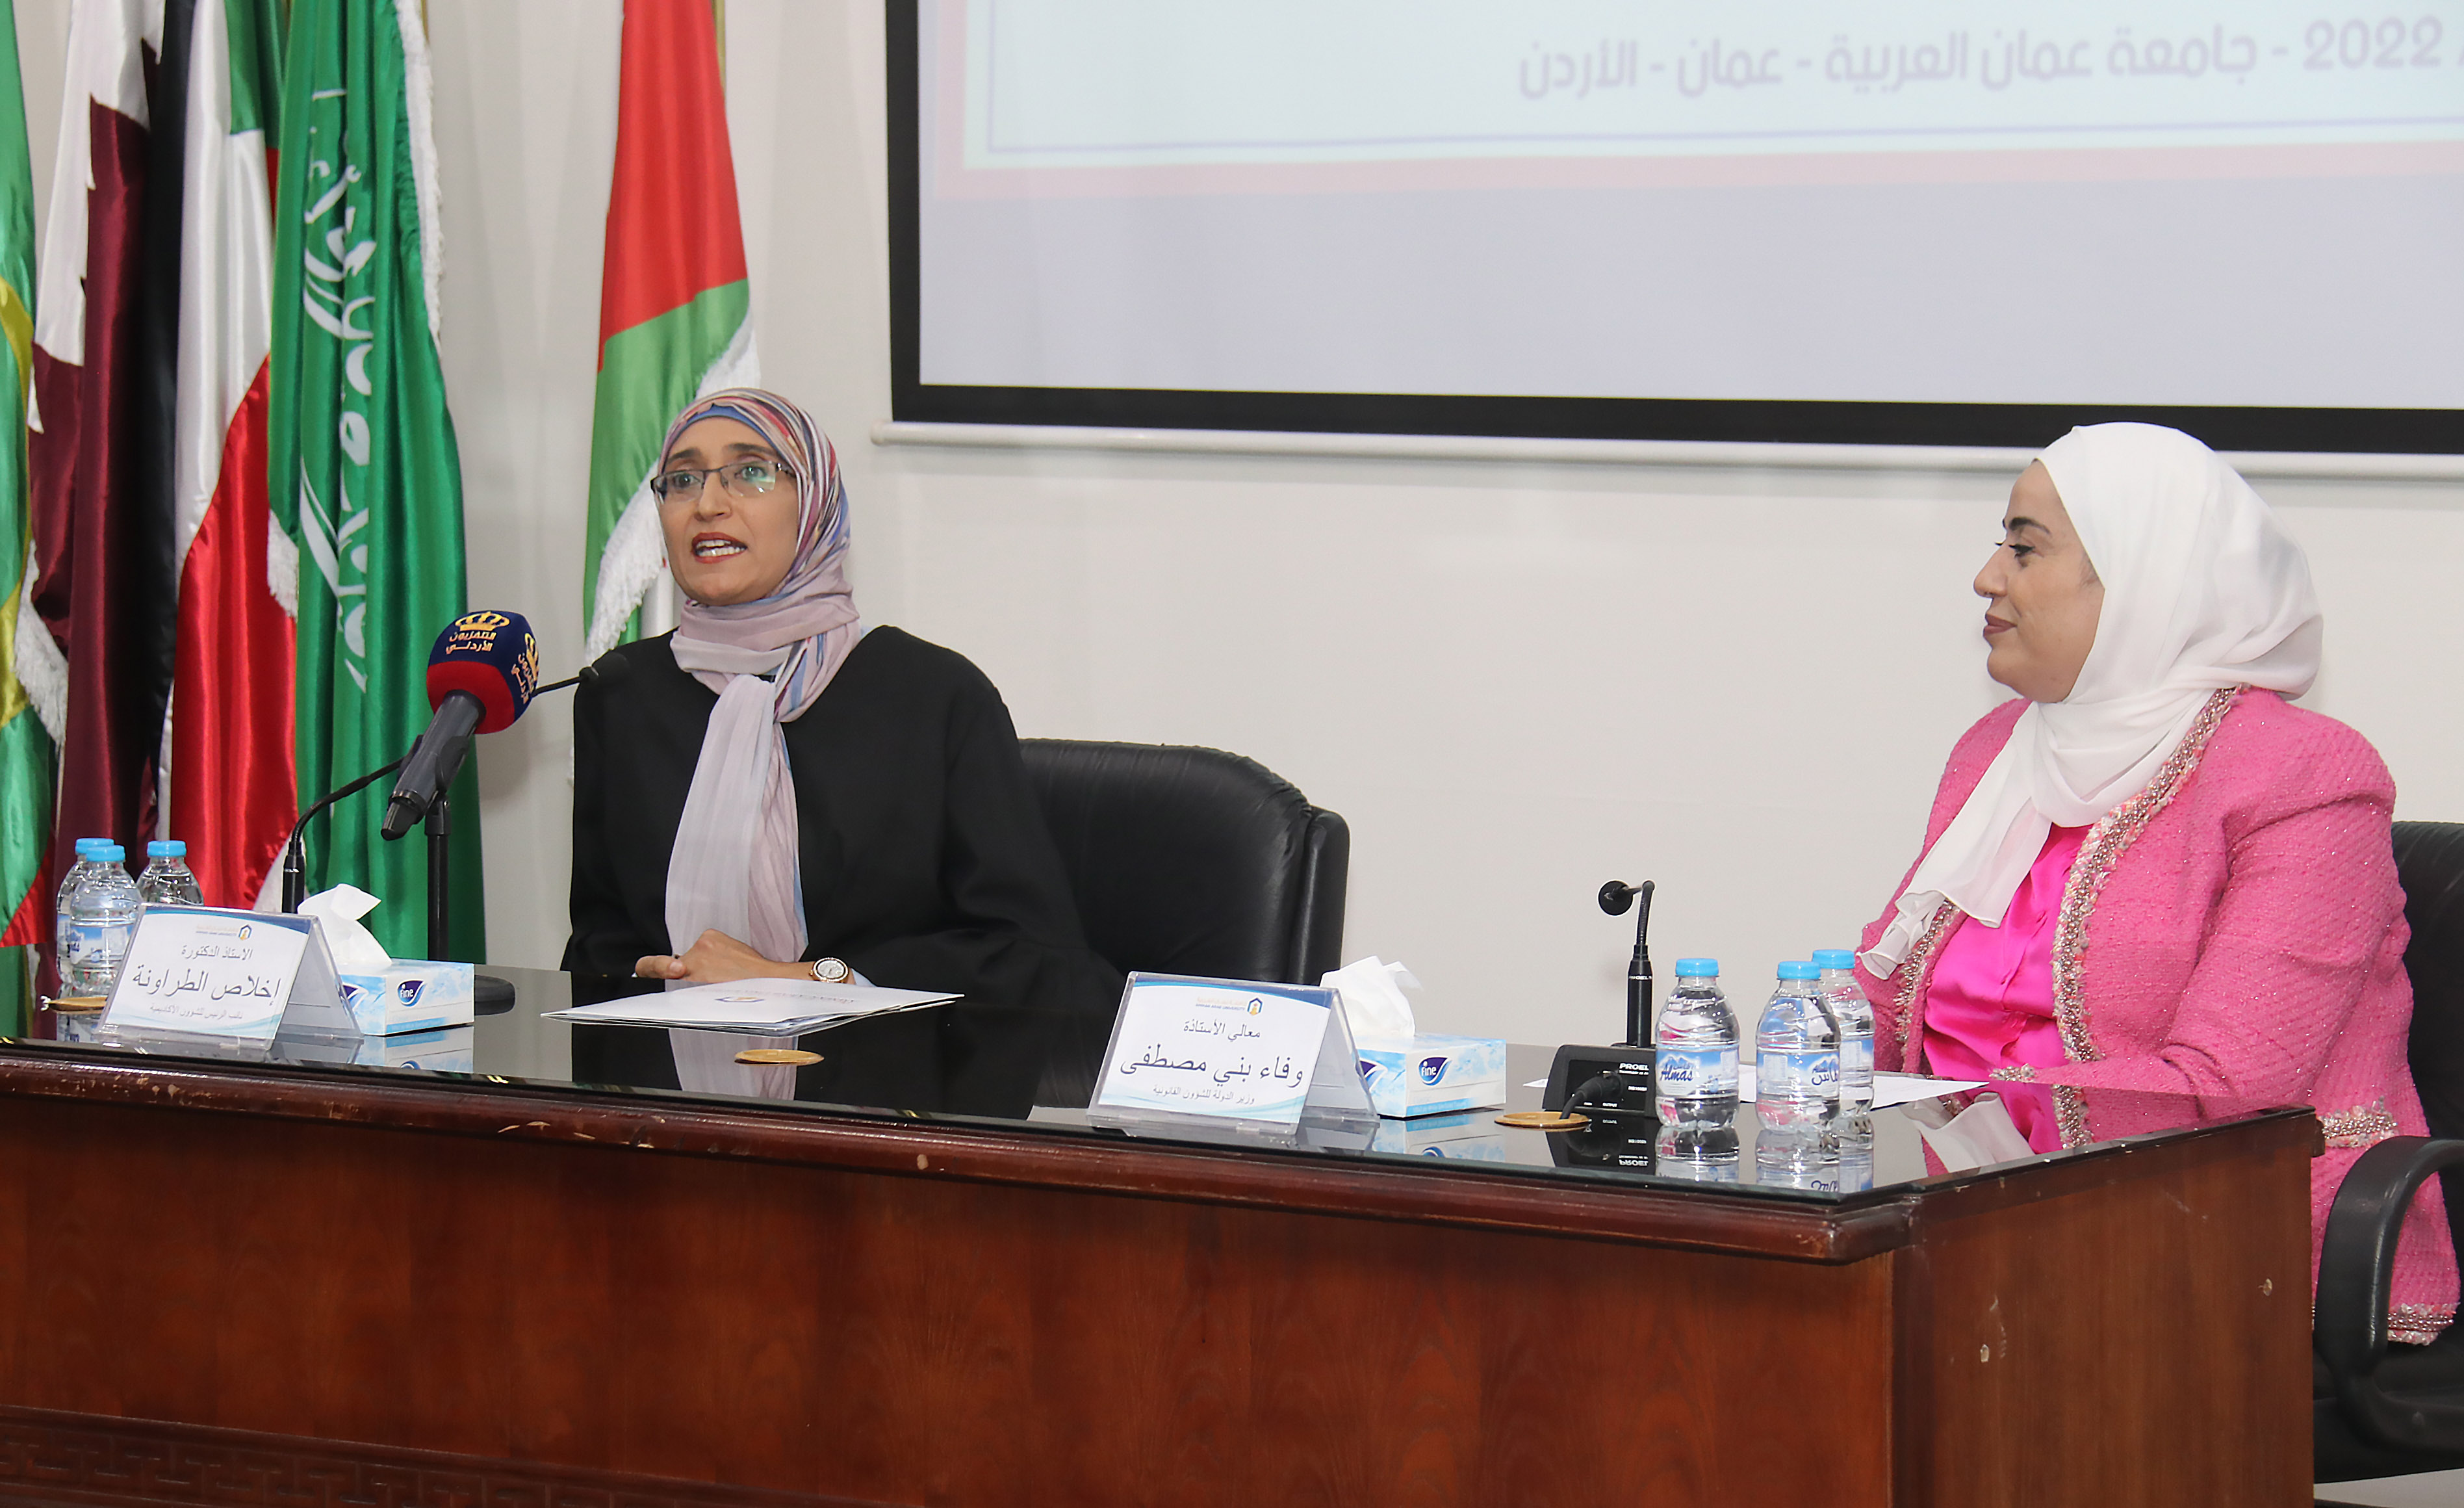 ندوة "التمكين السياسي والقيادي للمرأة الأردنية" في عمان العربية7